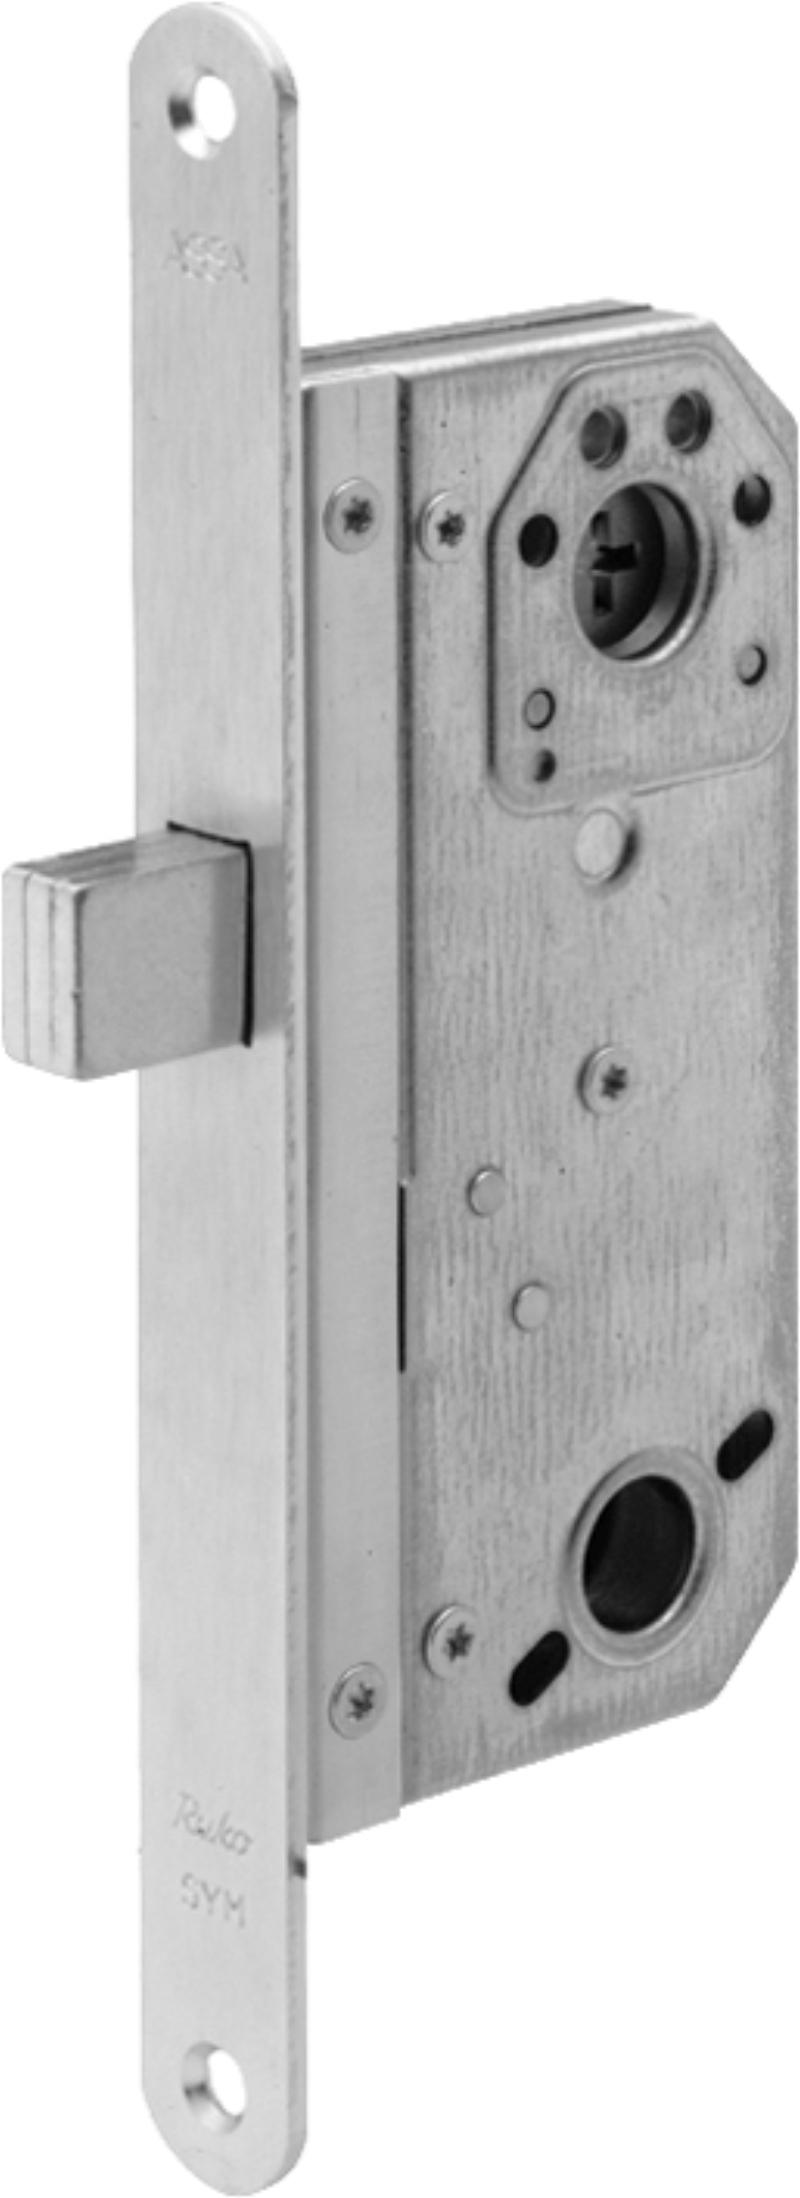 Assa låsbox 9788 m/mikro (521125)